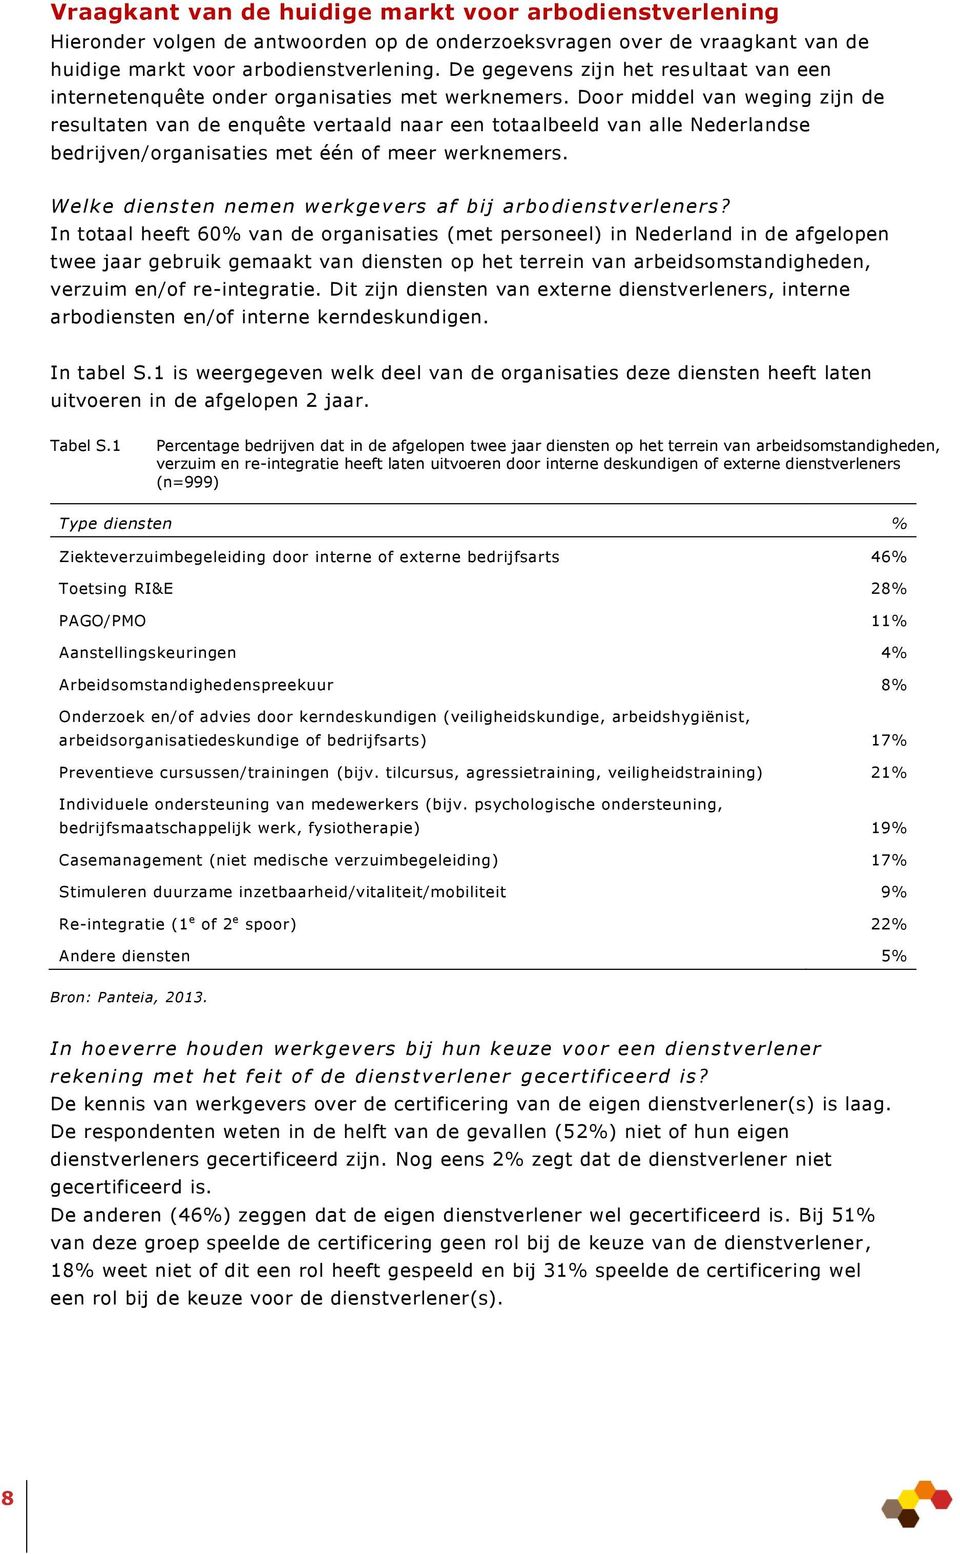 Door middel van weging zijn de resultaten van de enquête vertaald naar een totaalbeeld van alle Nederlandse bedrijven/organisaties met één of meer werknemers.